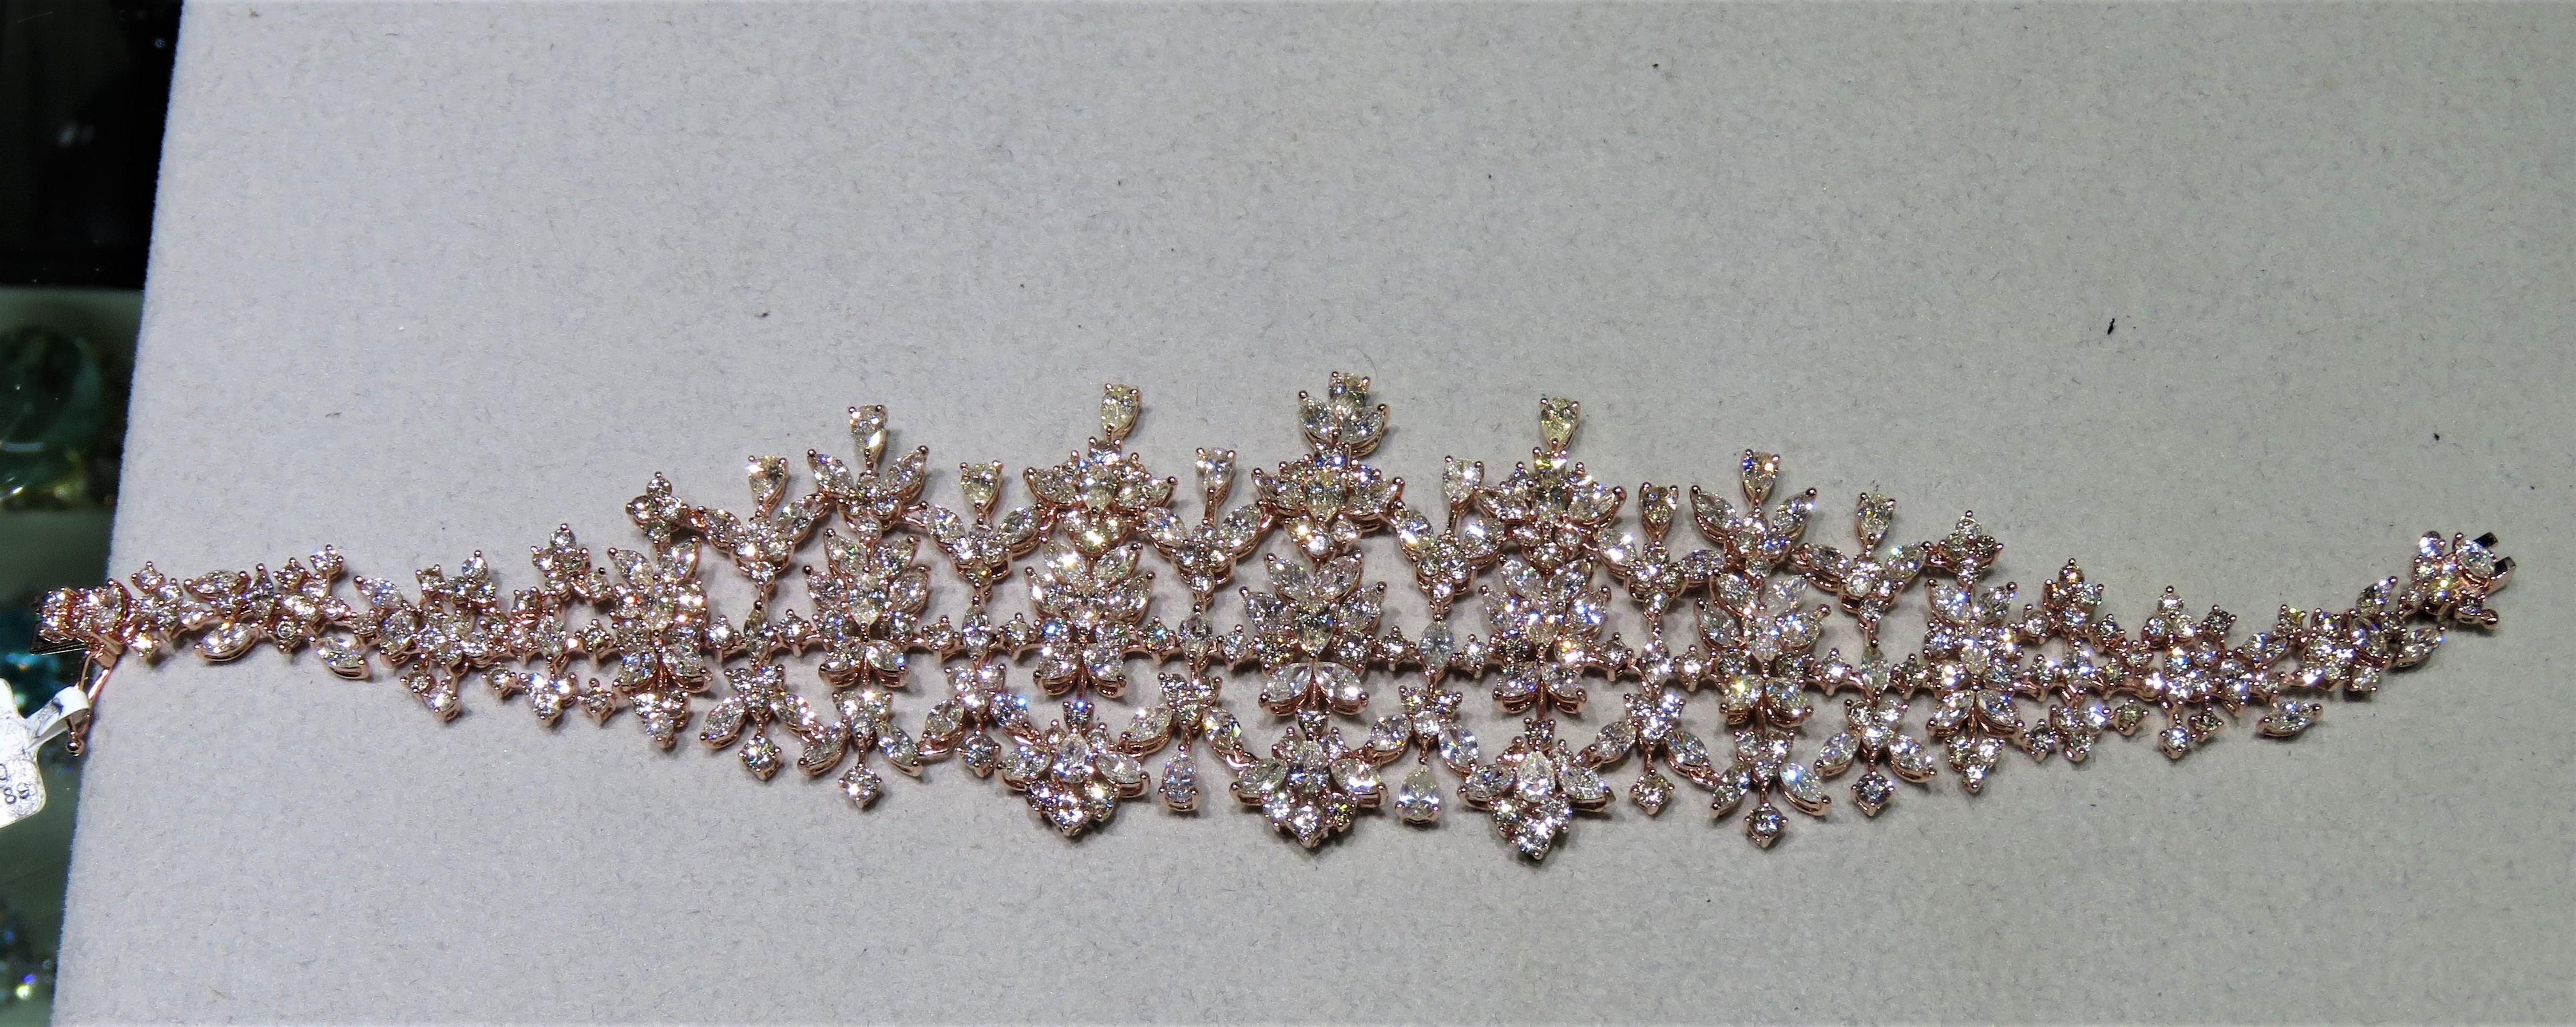 Das folgende Element, das wir anbieten, ist diese extrem seltene schöne 18KT Gold Fein seltene große Fancy Diamond Cluster-Armband. Dieses prächtige Armband besteht aus seltenen feinen Fancy-Diamanten in Form von Blumen!!! T.C.W. Ca. 20CTS!! Dieses